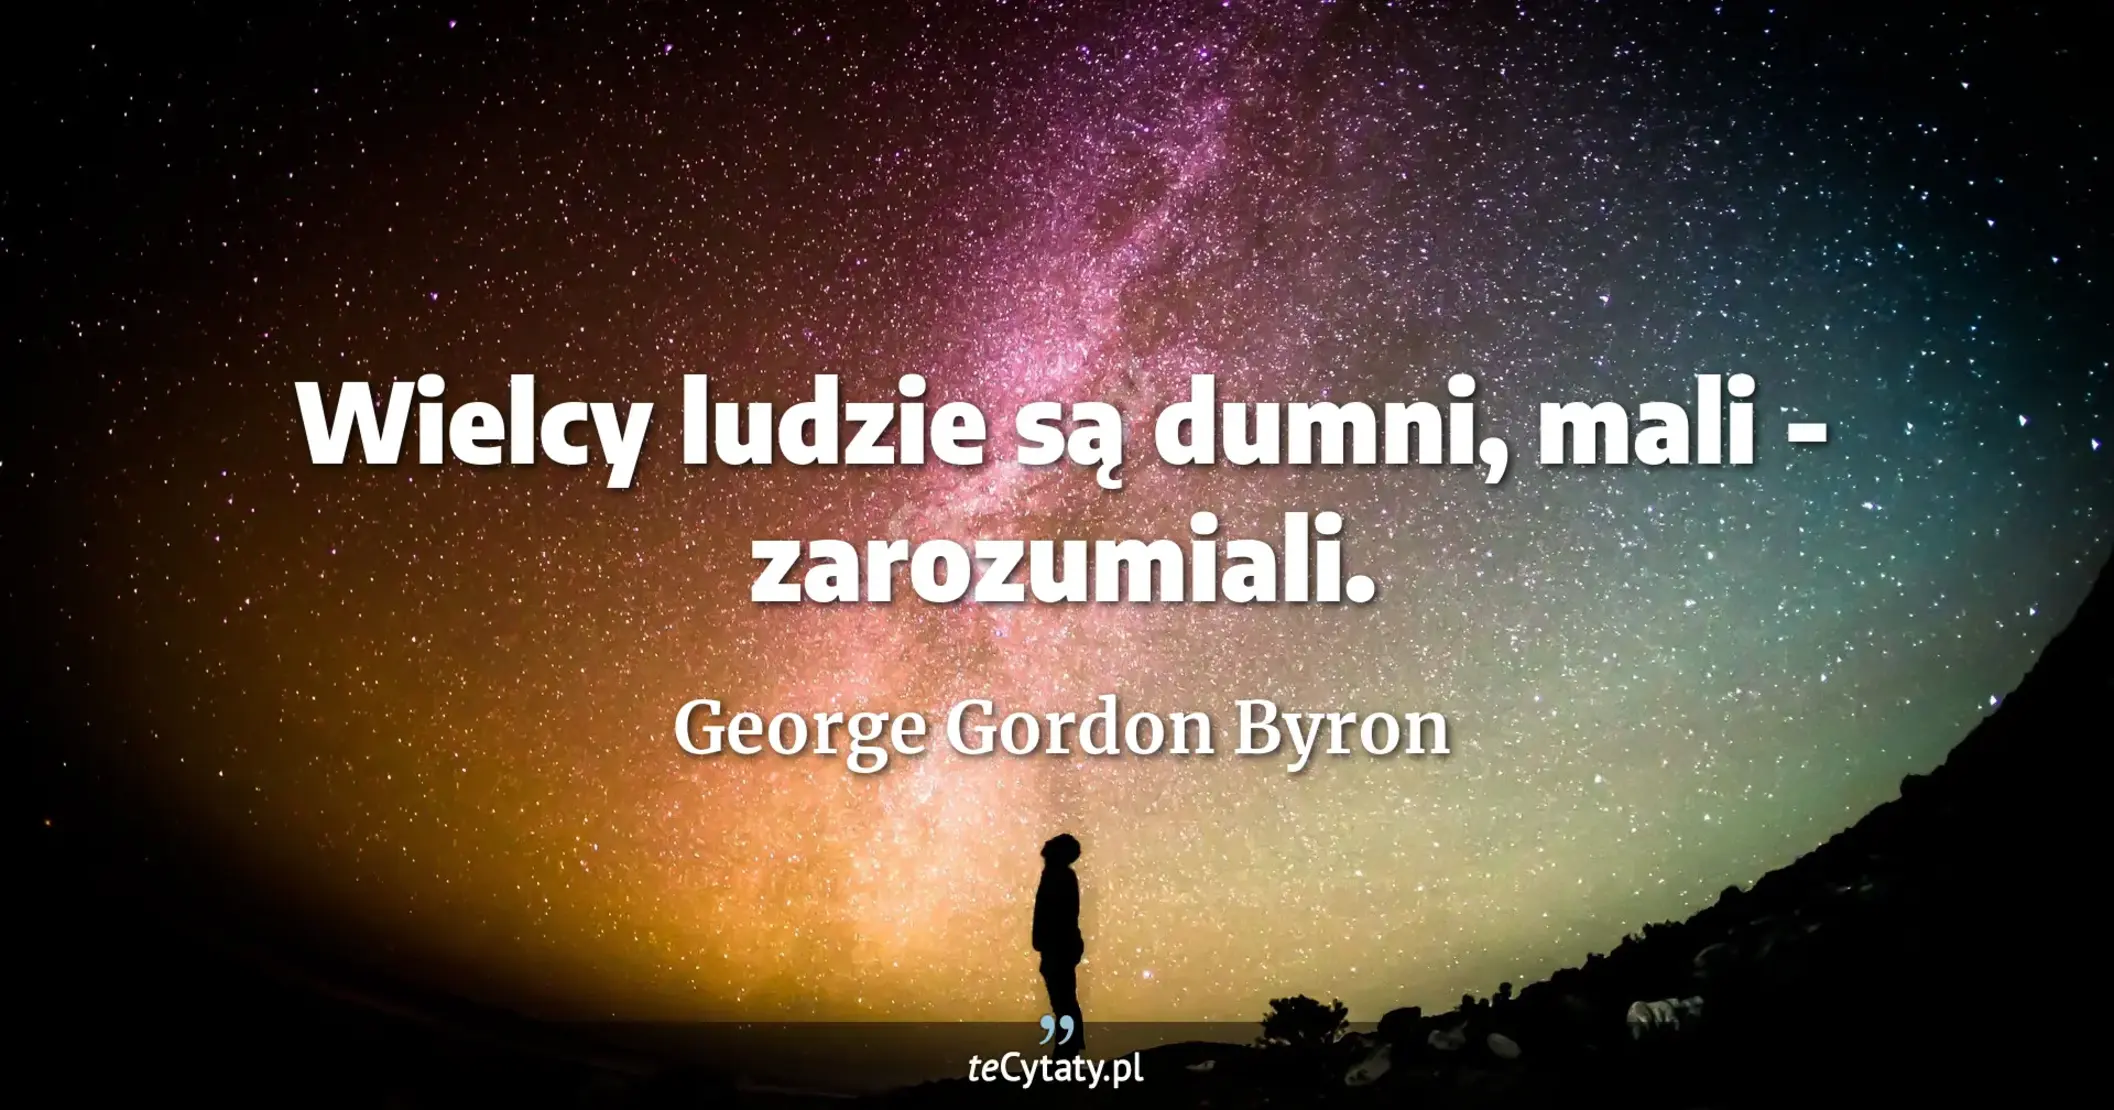 Wielcy ludzie są dumni, mali - zarozumiali. - George Gordon Byron